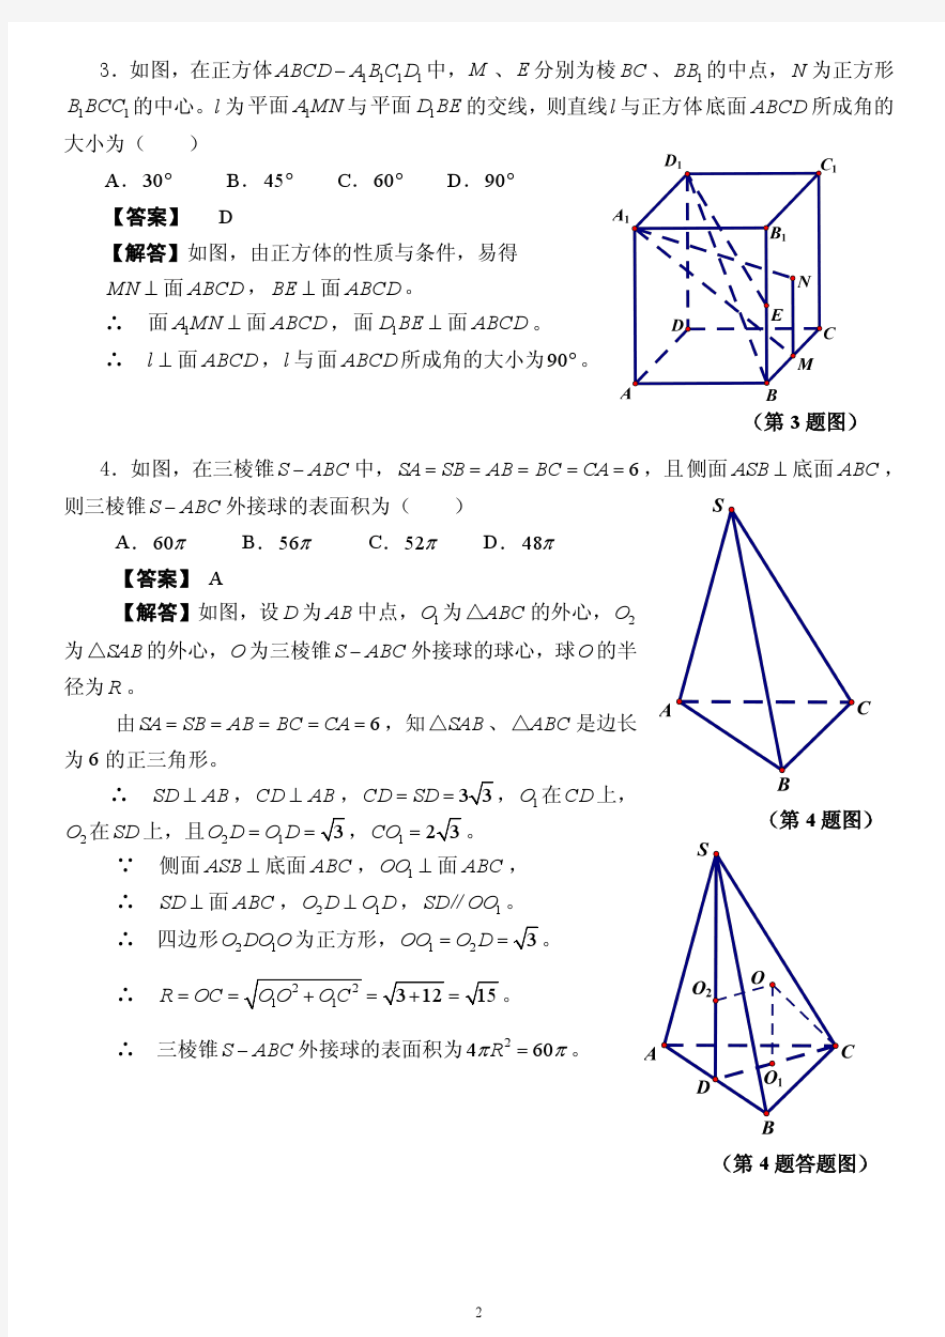 2018年福建省高一数学竞赛试题参考答案及评分标准(1).pdf